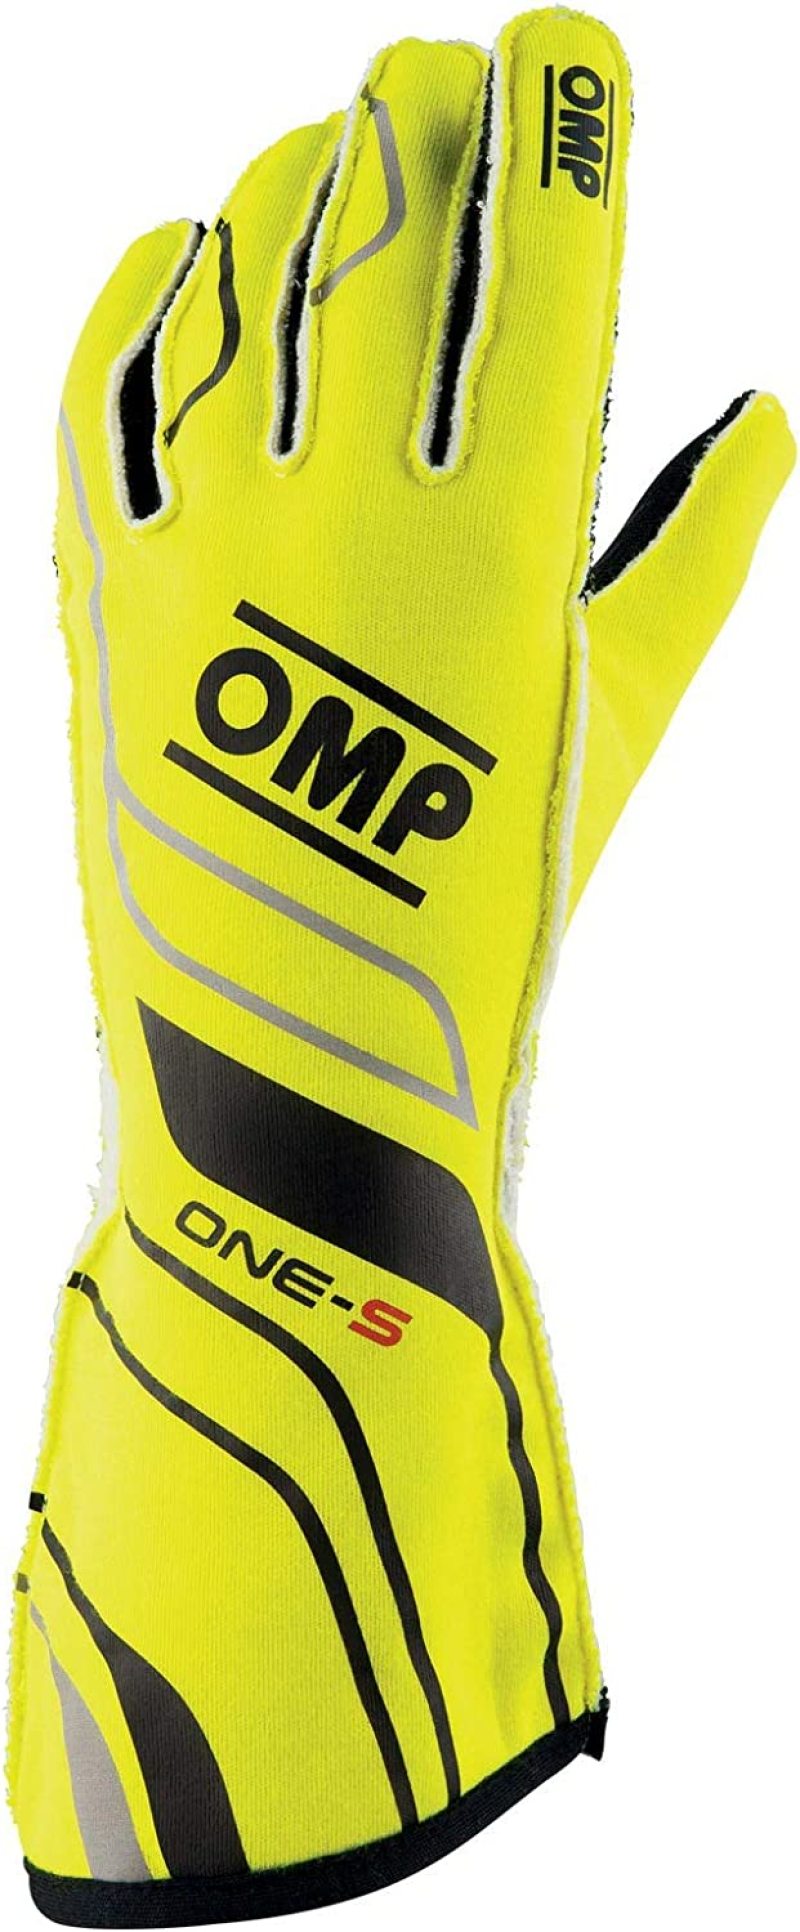 OMP One-S Gloves Fluorescent Yellow - Size XXL Fia 8556-2018 - IB0-0770-A01-099-XXL